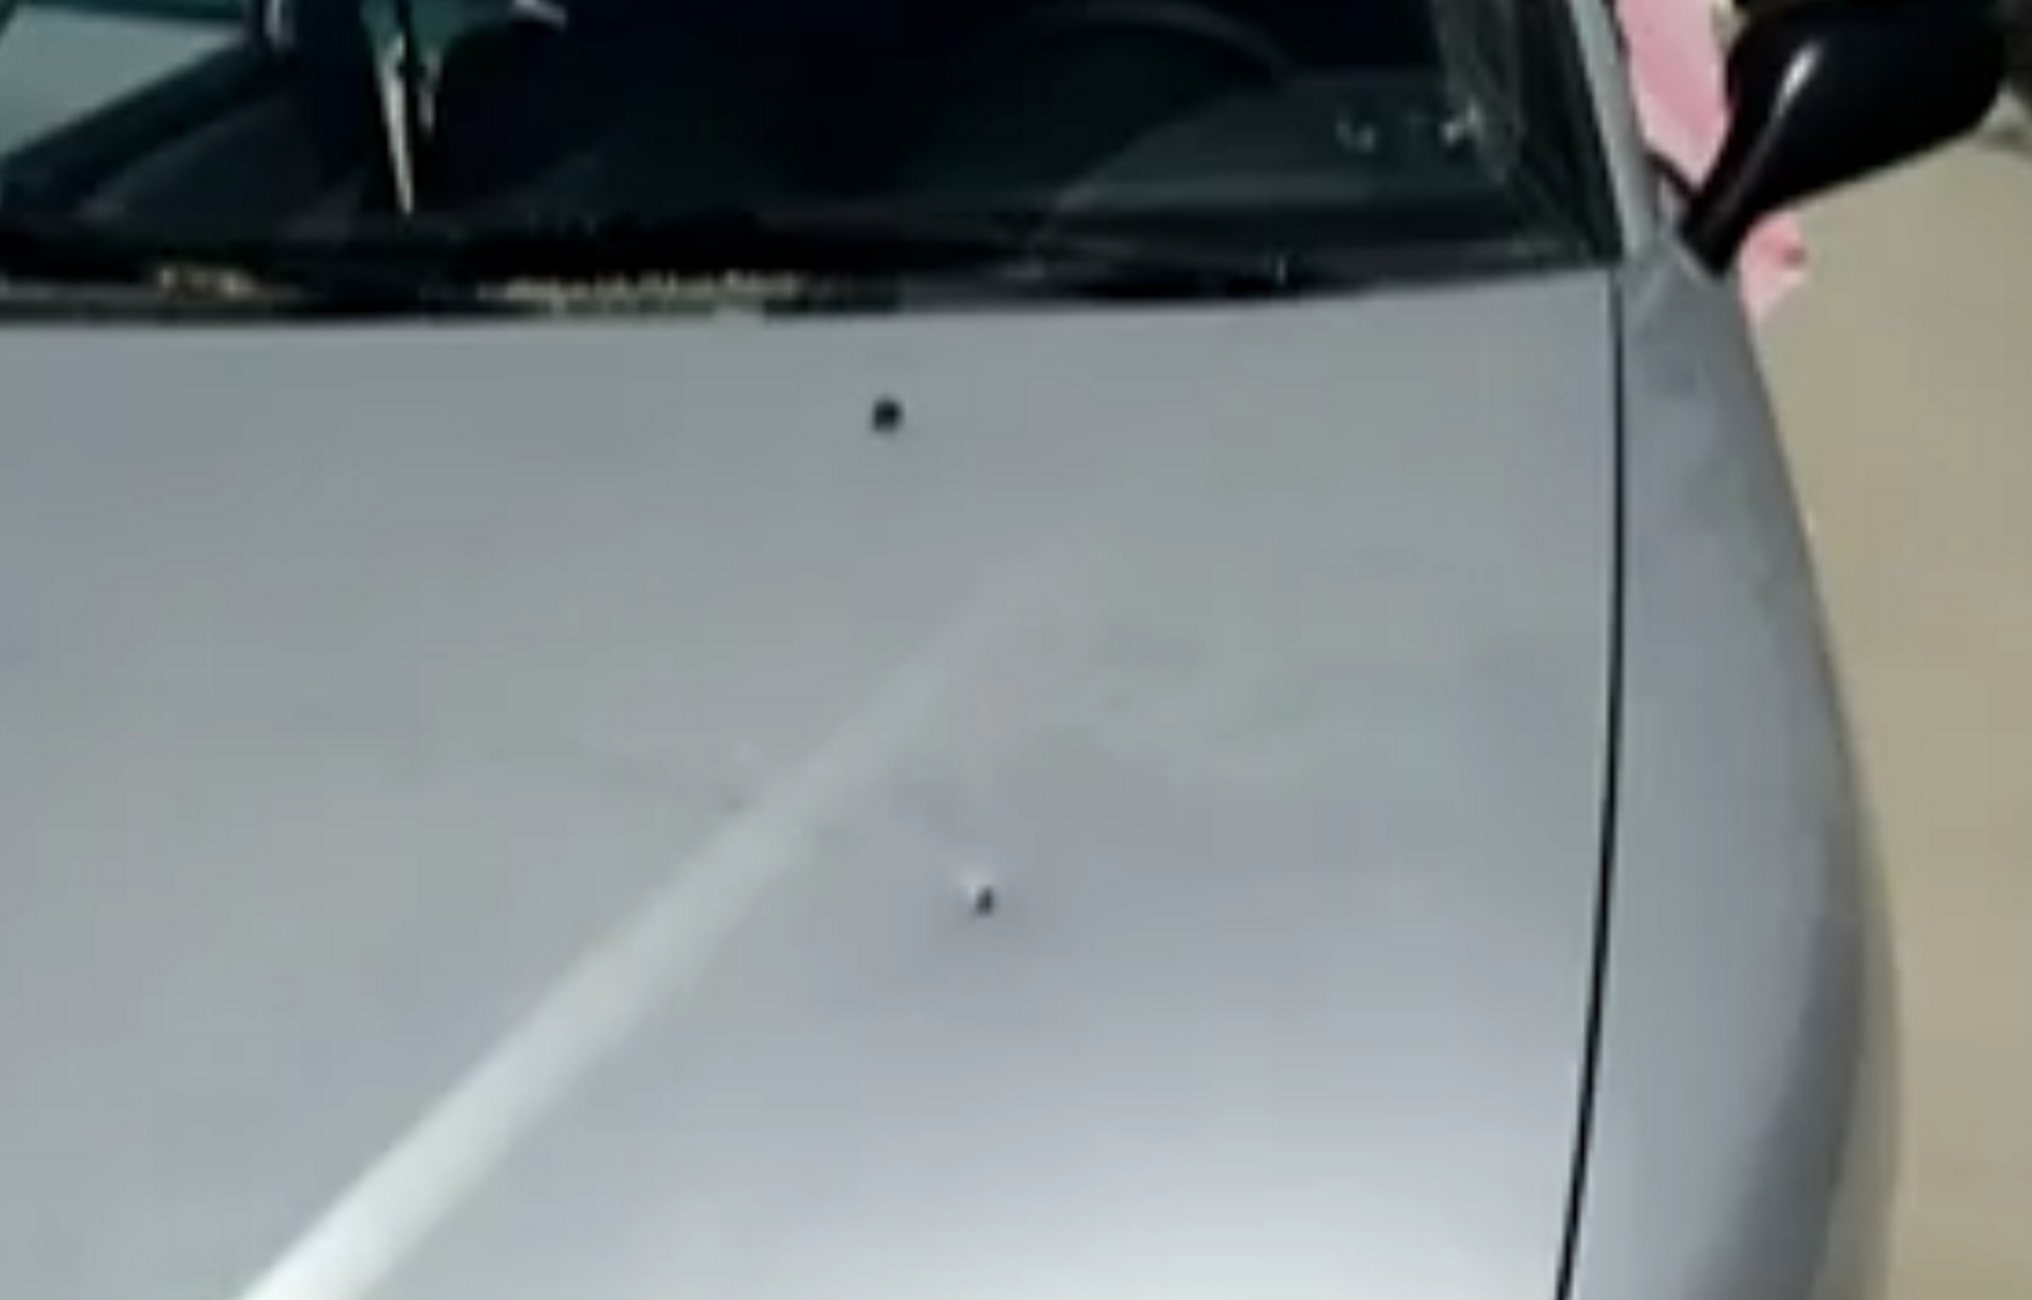 Εύβοια: Αδέσποτες σφαίρες σε αυτό το αυτοκίνητο στην Ερέτρια – Τρόμος για τα μικρά παιδιά που ήταν μέσα